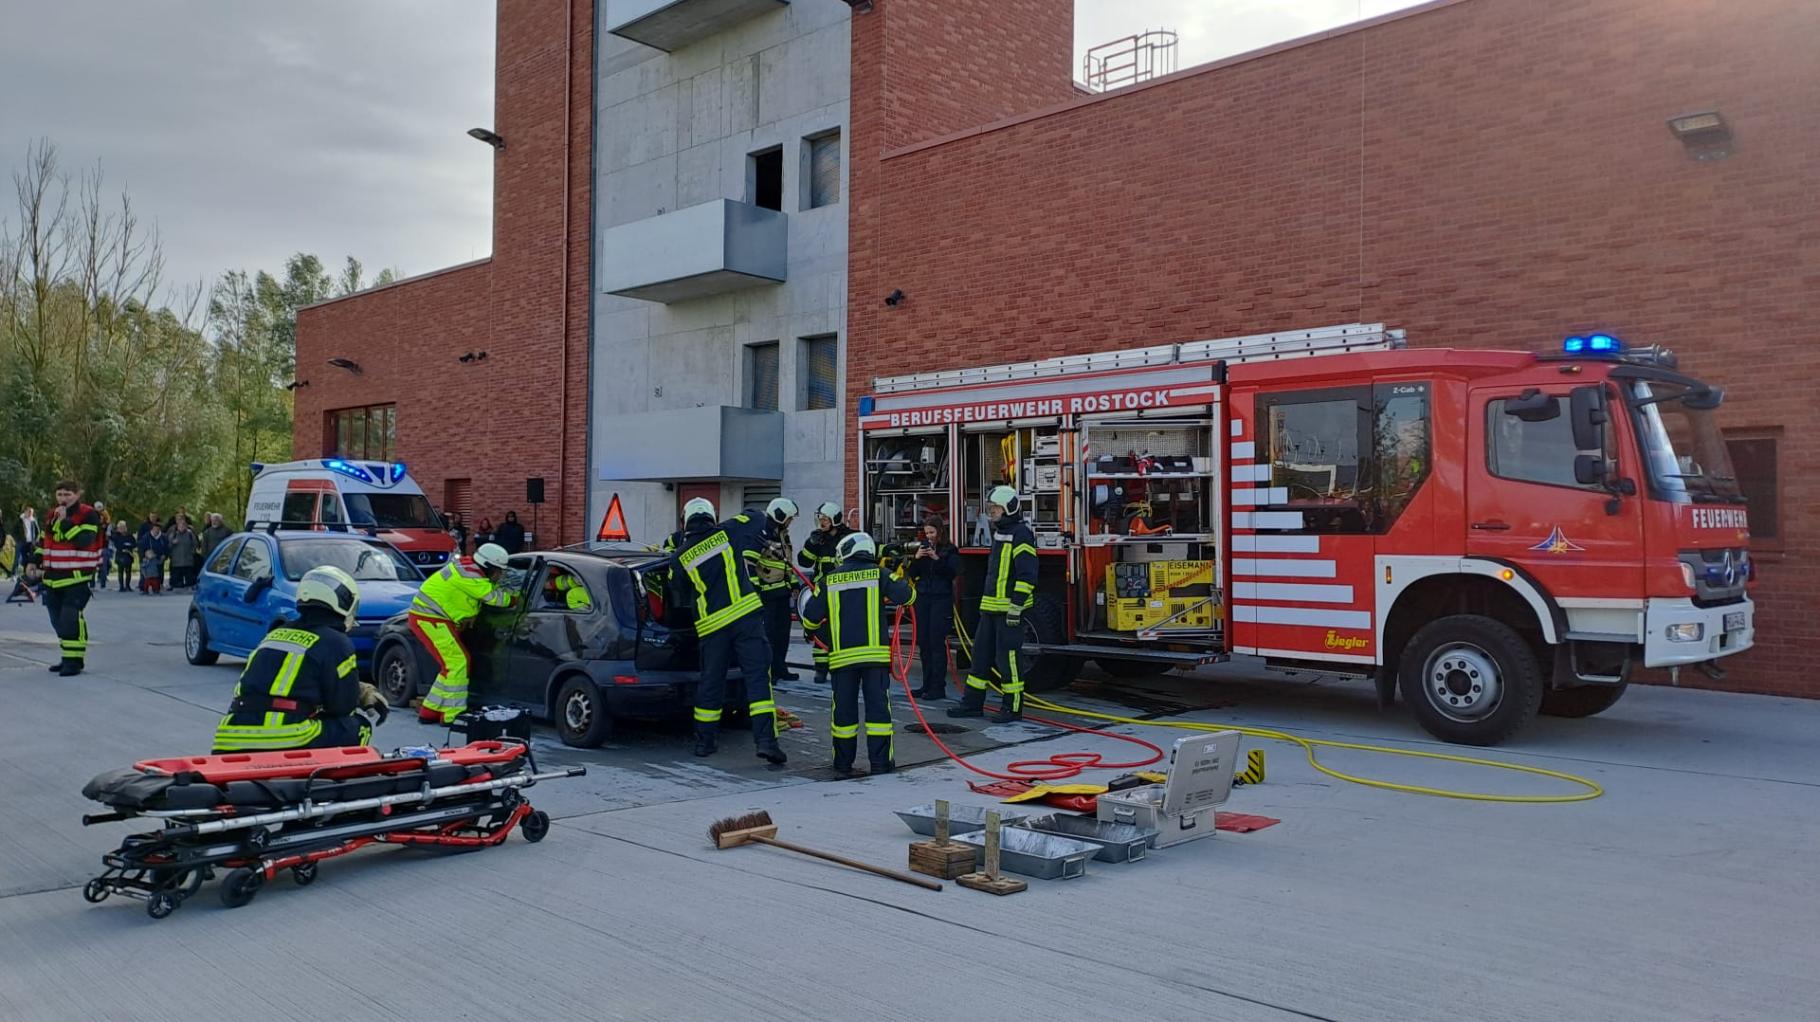 Höhenrettung, Löschen, Autounfall: Rostocker Feuerwehr gewährt Einblick in Arbeitsalltag